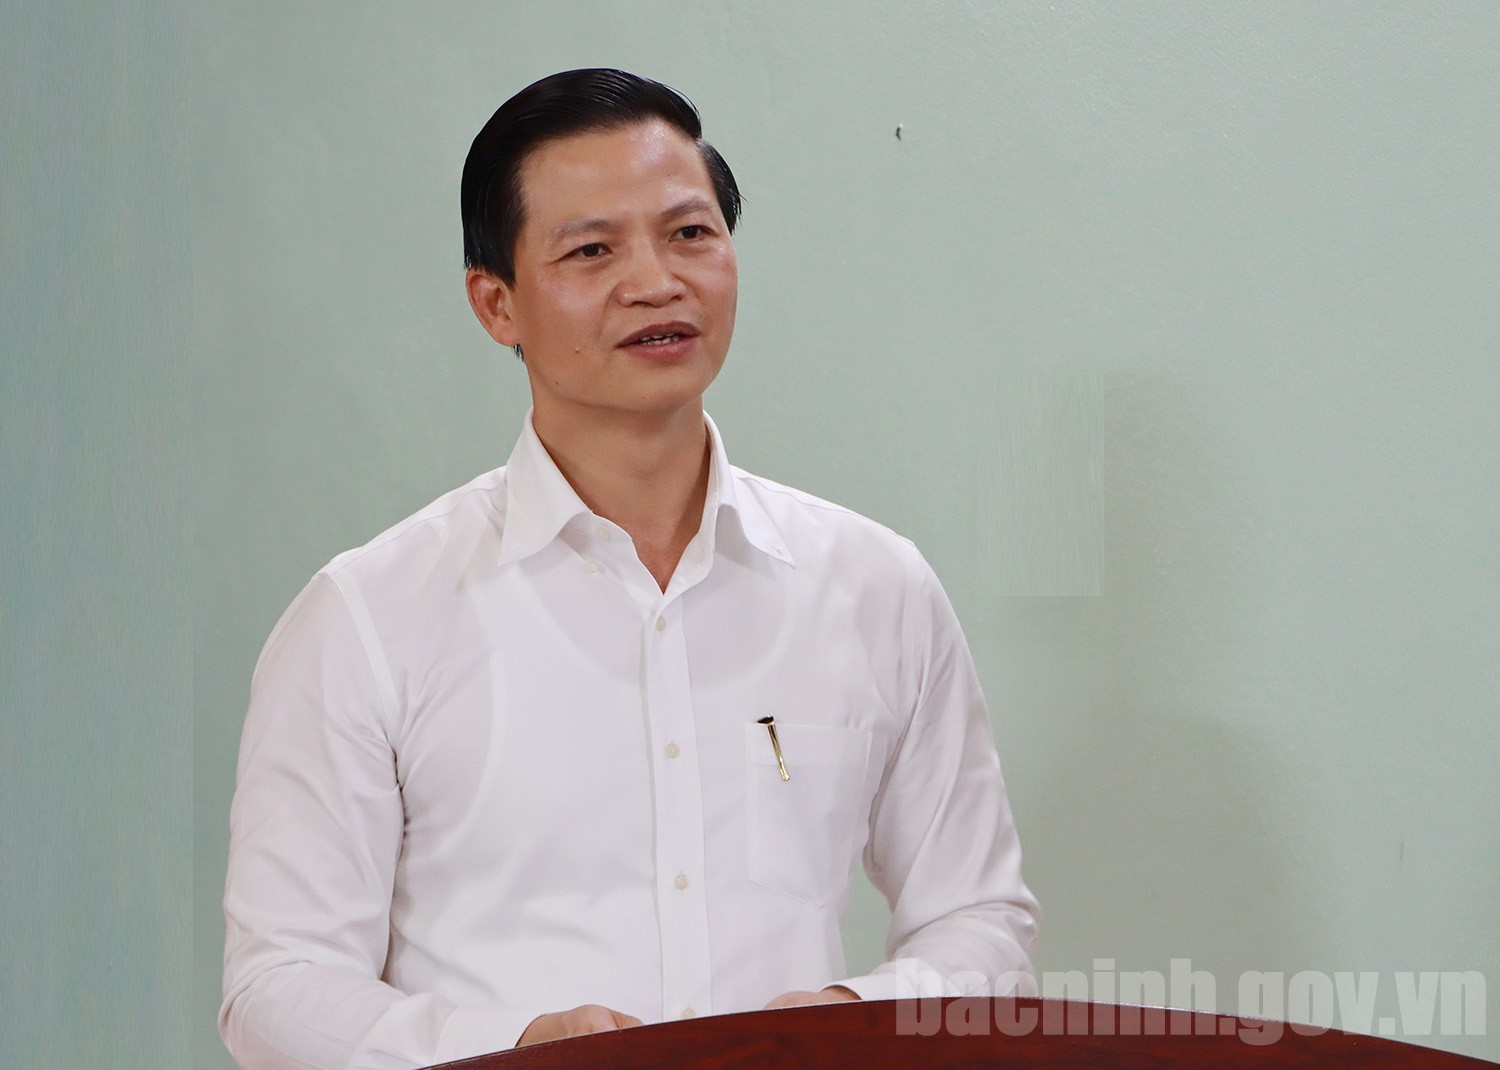 Phó Chủ tịch Thường trực Vương Quốc Tuấn điều hành UBND tỉnh Bắc Ninh